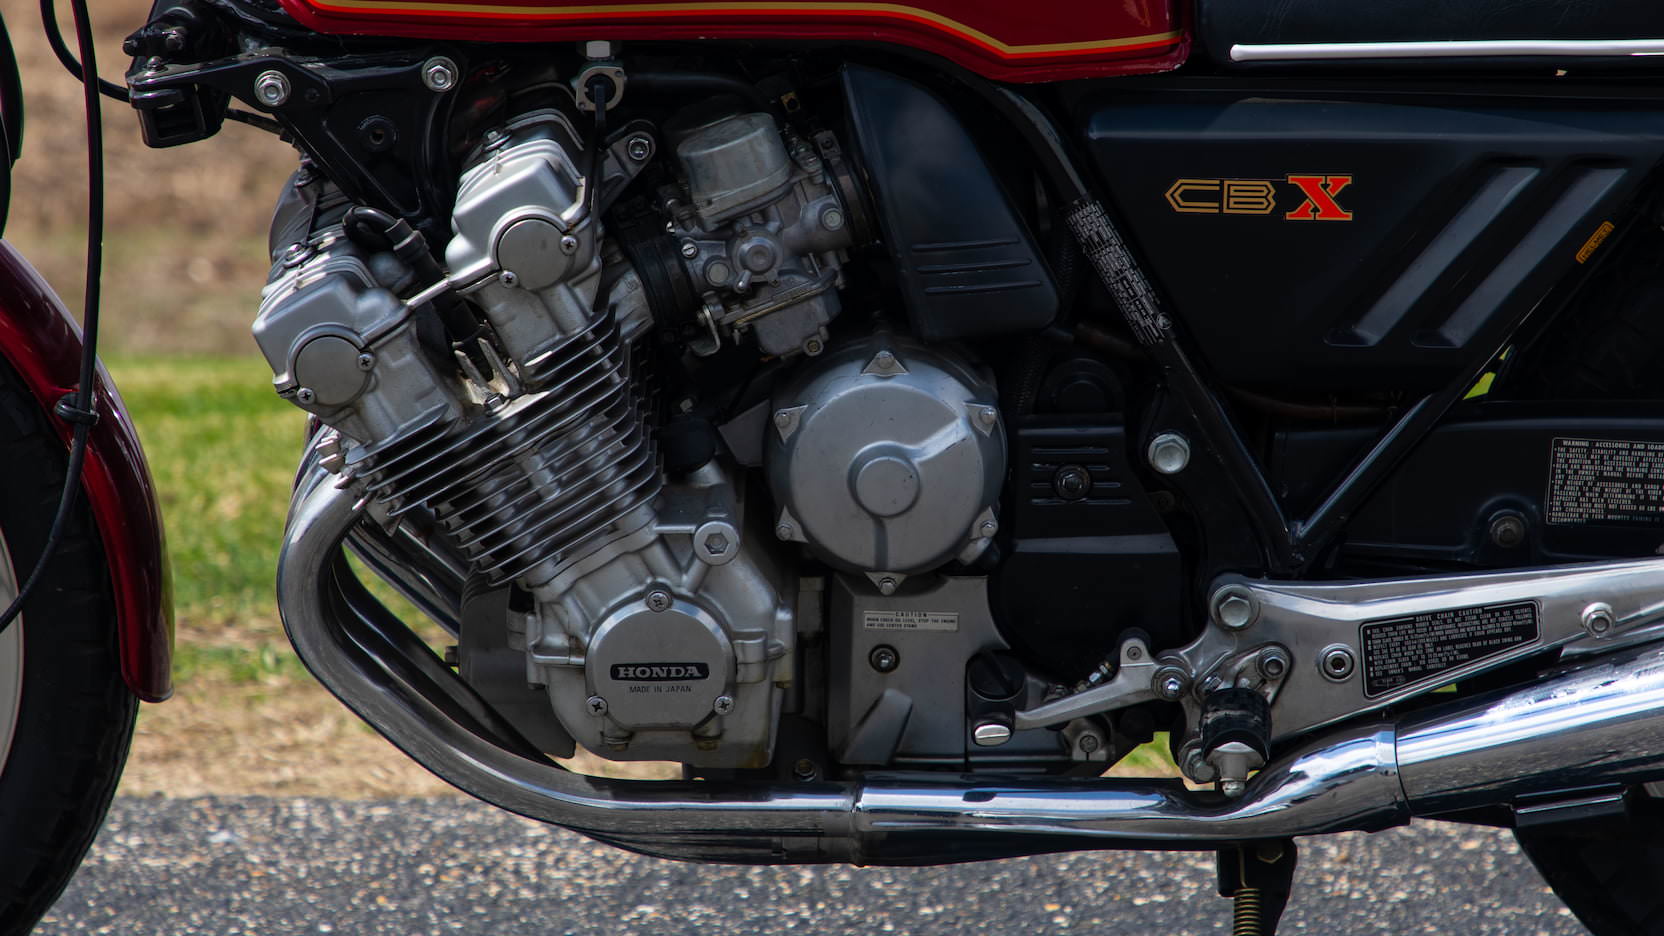 1978 Honda CBX 1024cc Six-Cylinder Motorcycle